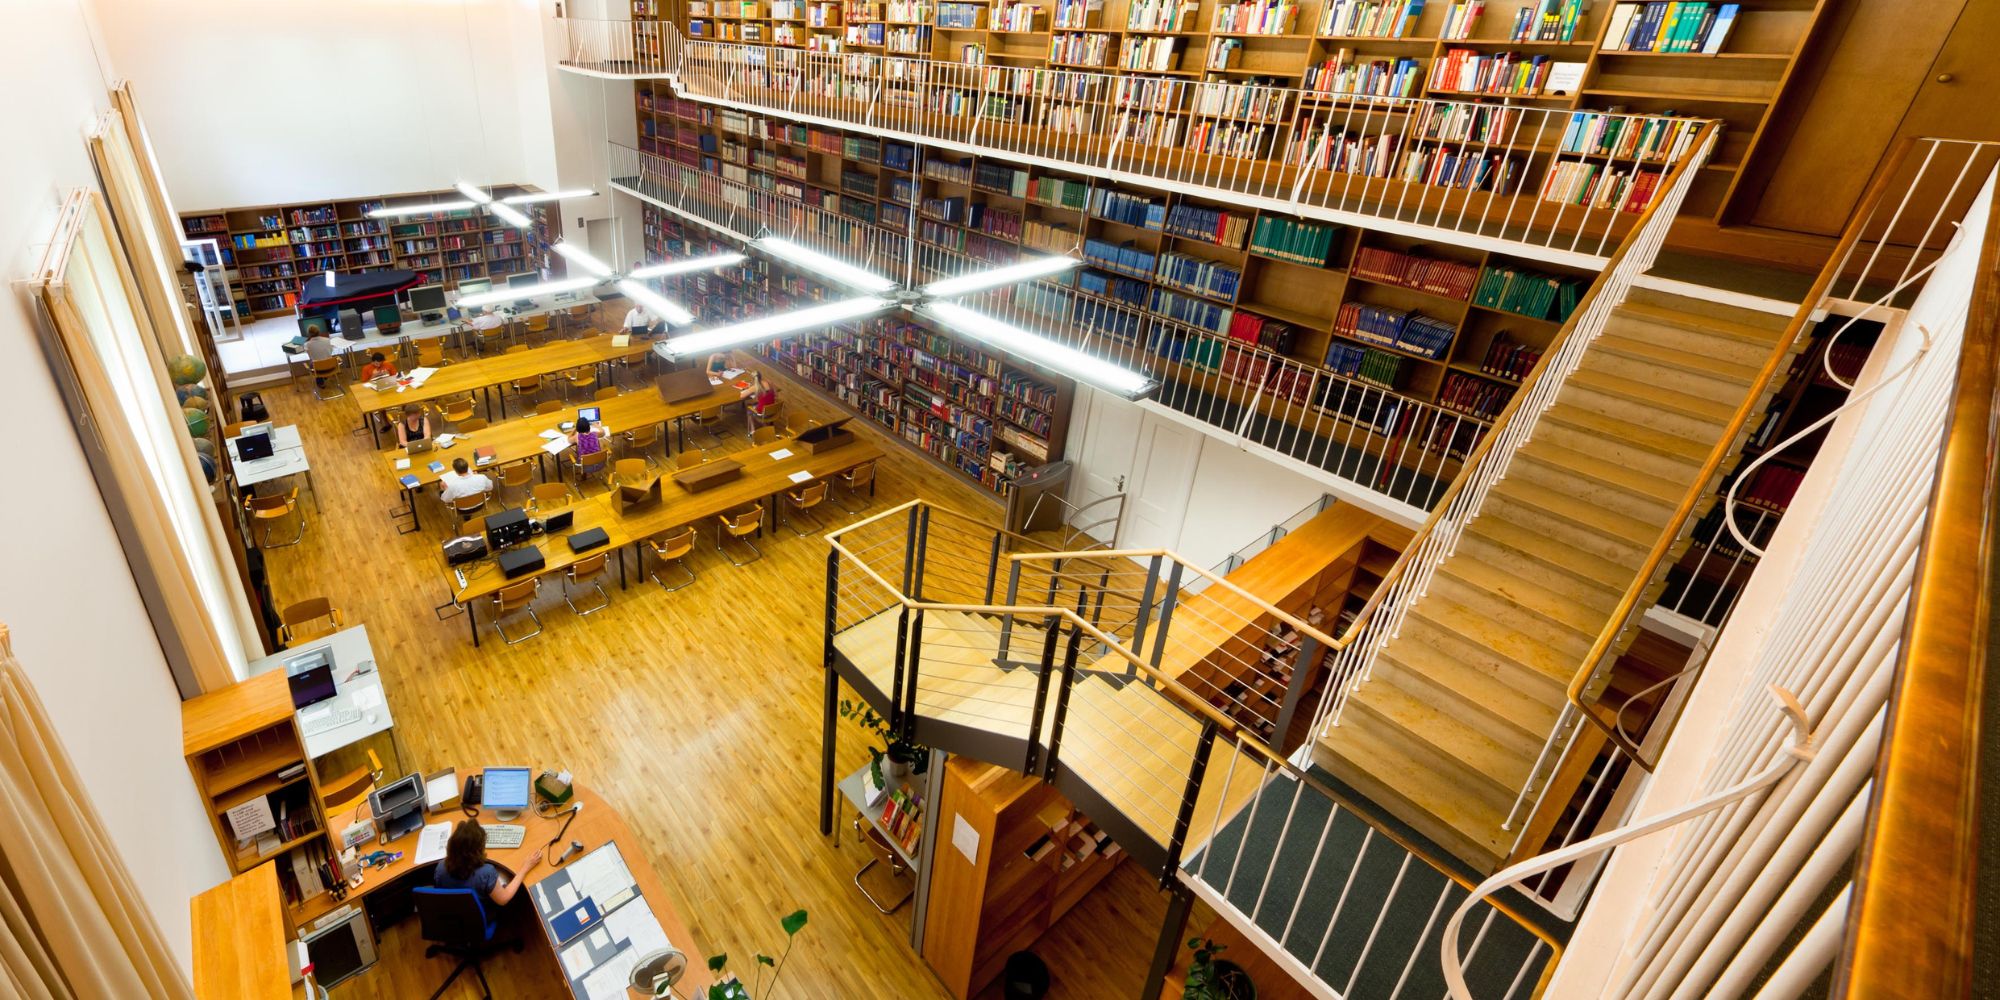 Bibliotheken in München: Lesen, lernen und nach Büchern stöbern